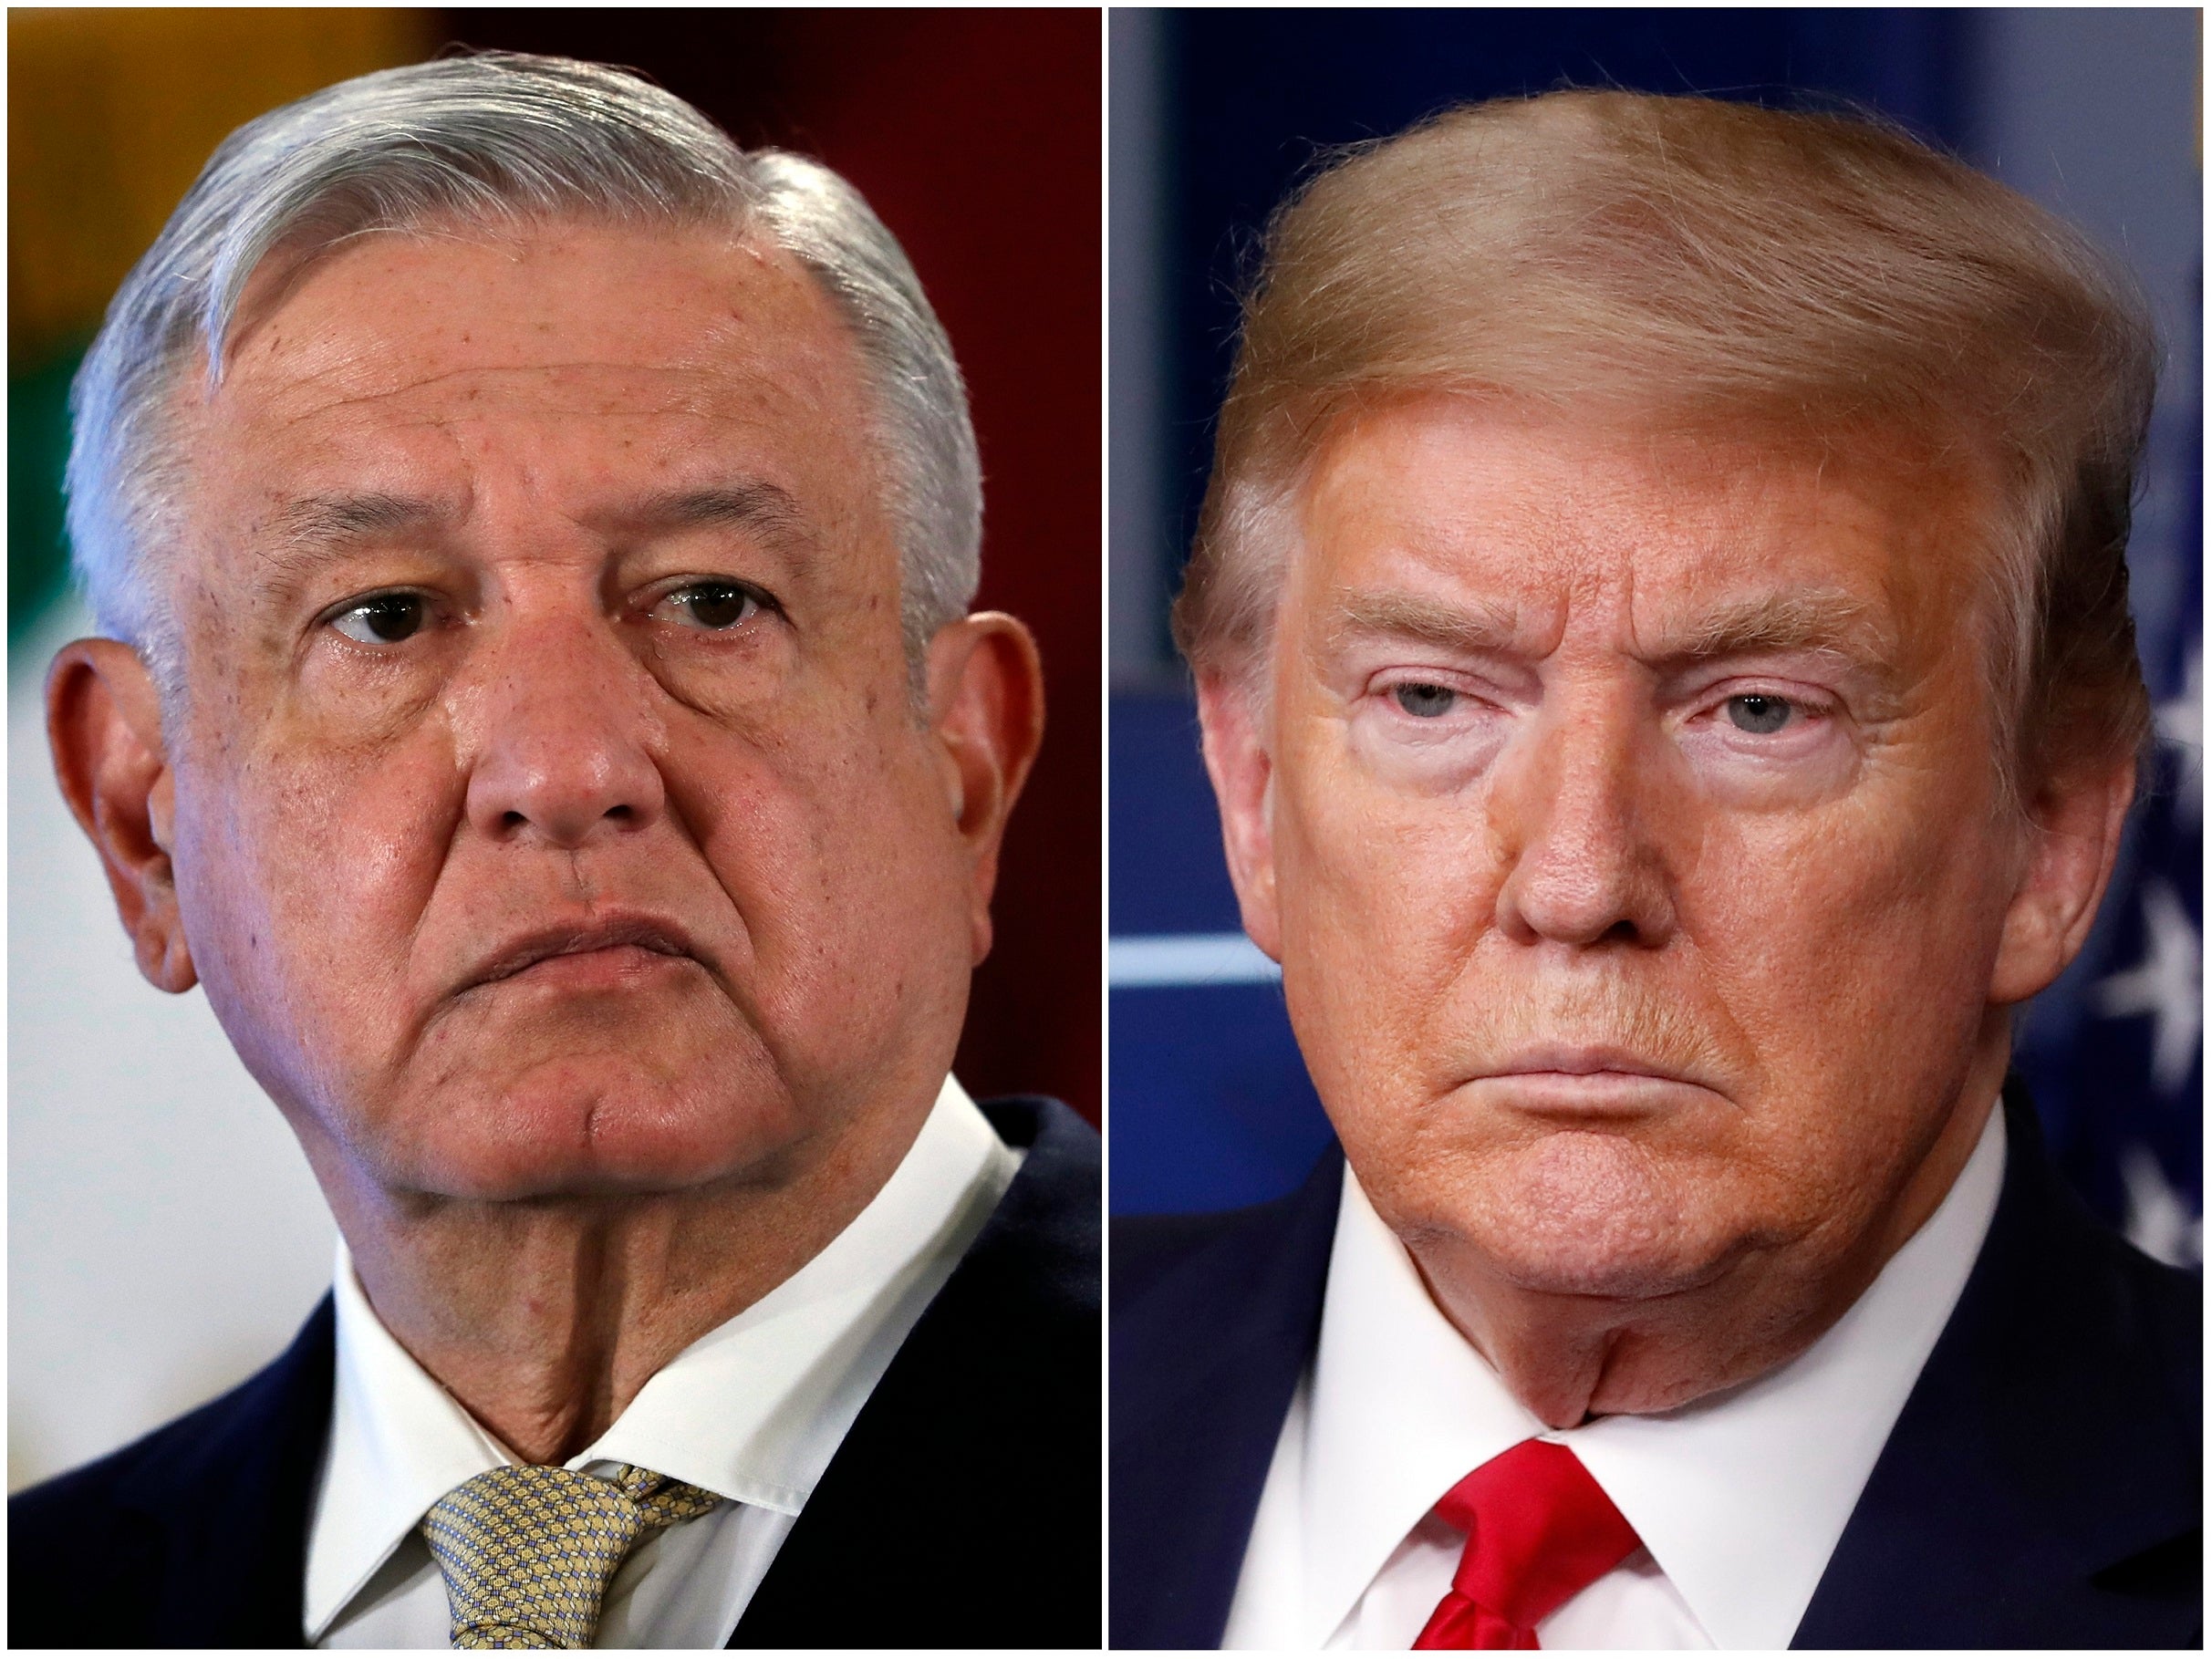 El presidente mexicano, Andrés Manuel López Obrador, a la izquierda, el 29 de noviembre de 2019 en Ciudad de México, y el presidente estadounidense Donald Trump el 17 de abril de 2020 en Washington, DC.